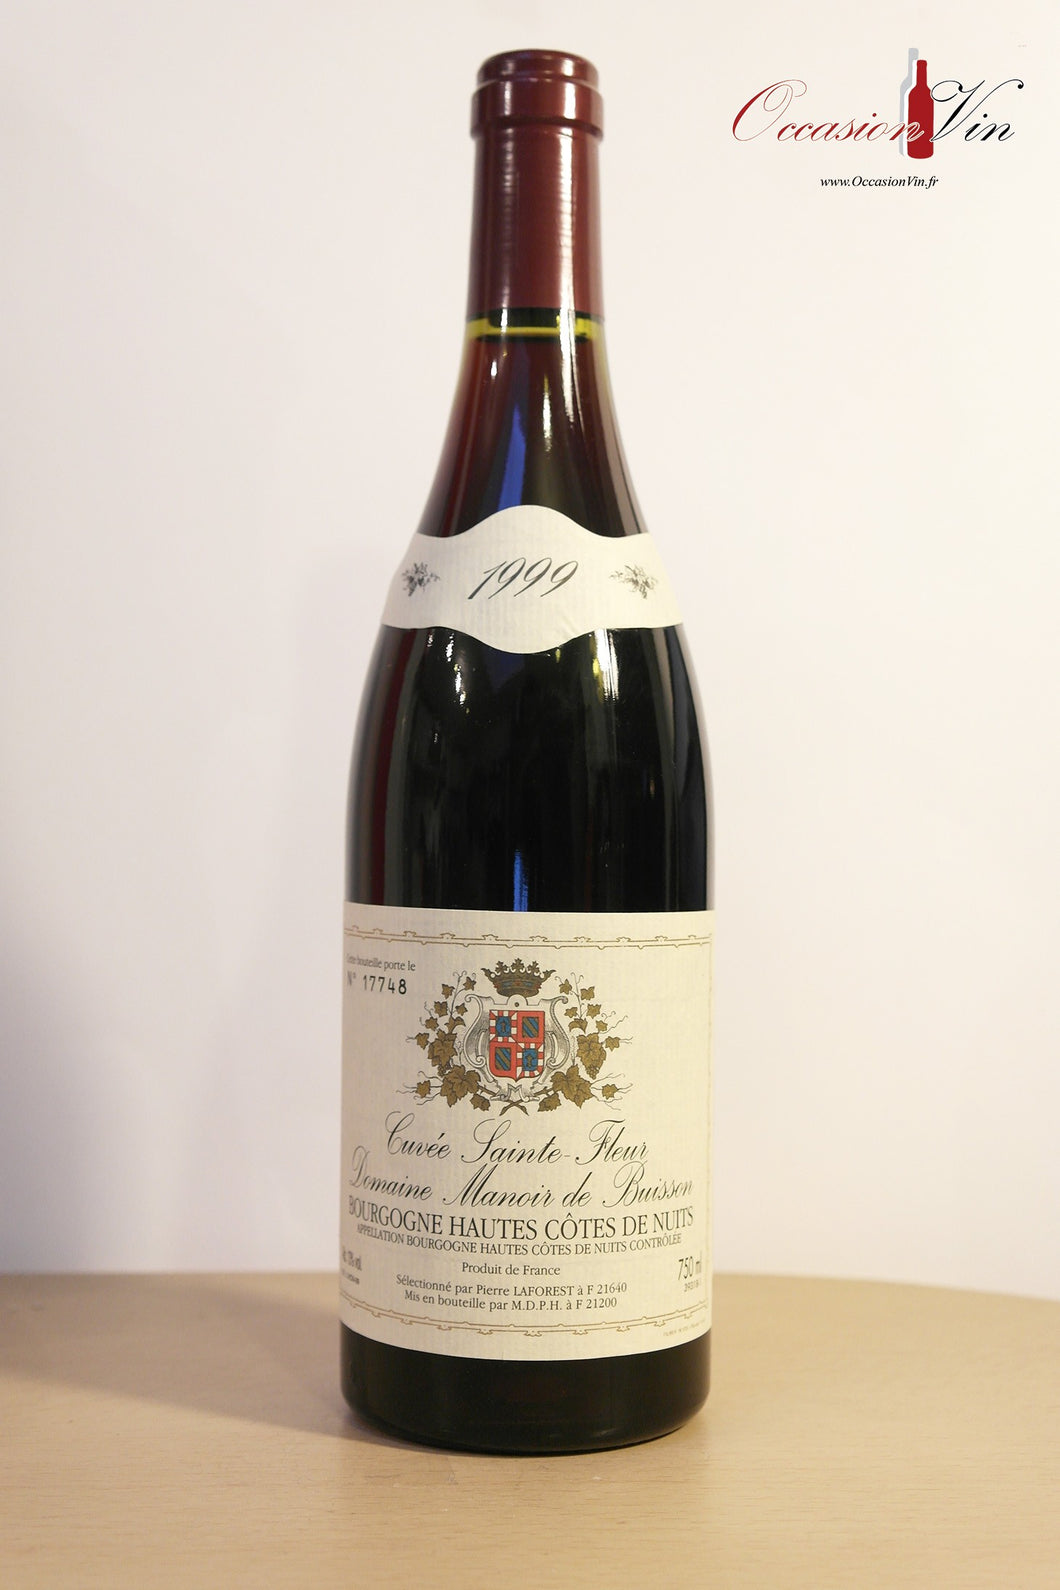 Cuvée Sainte-Fleur Manoir de Buisson Vin 1999